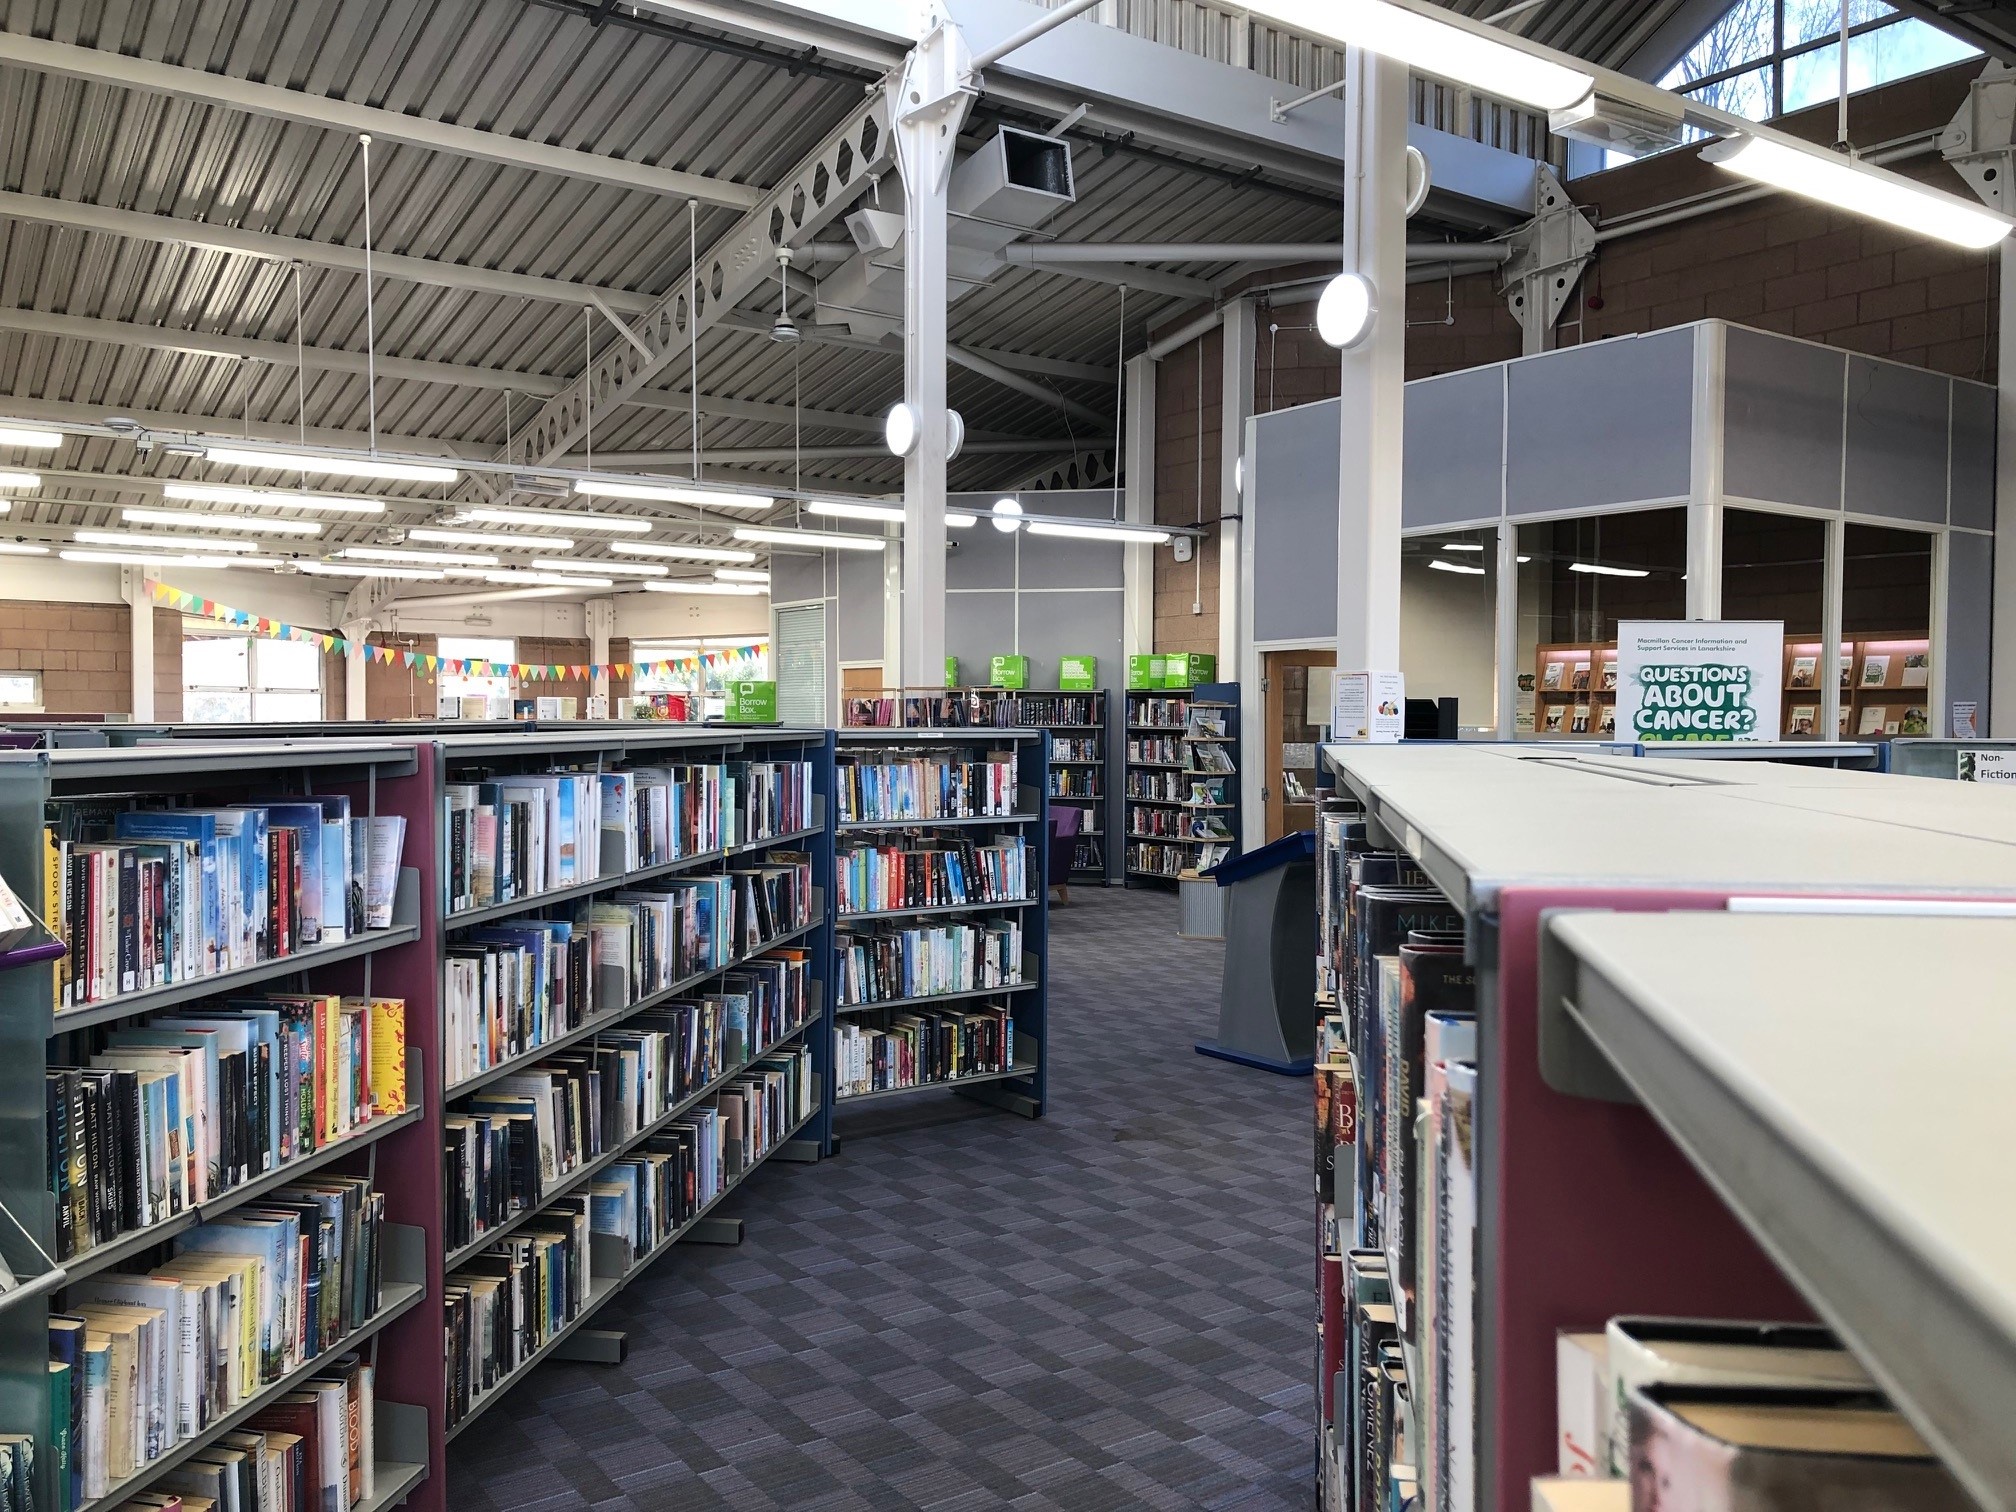 Bellshill cultural centre interior library